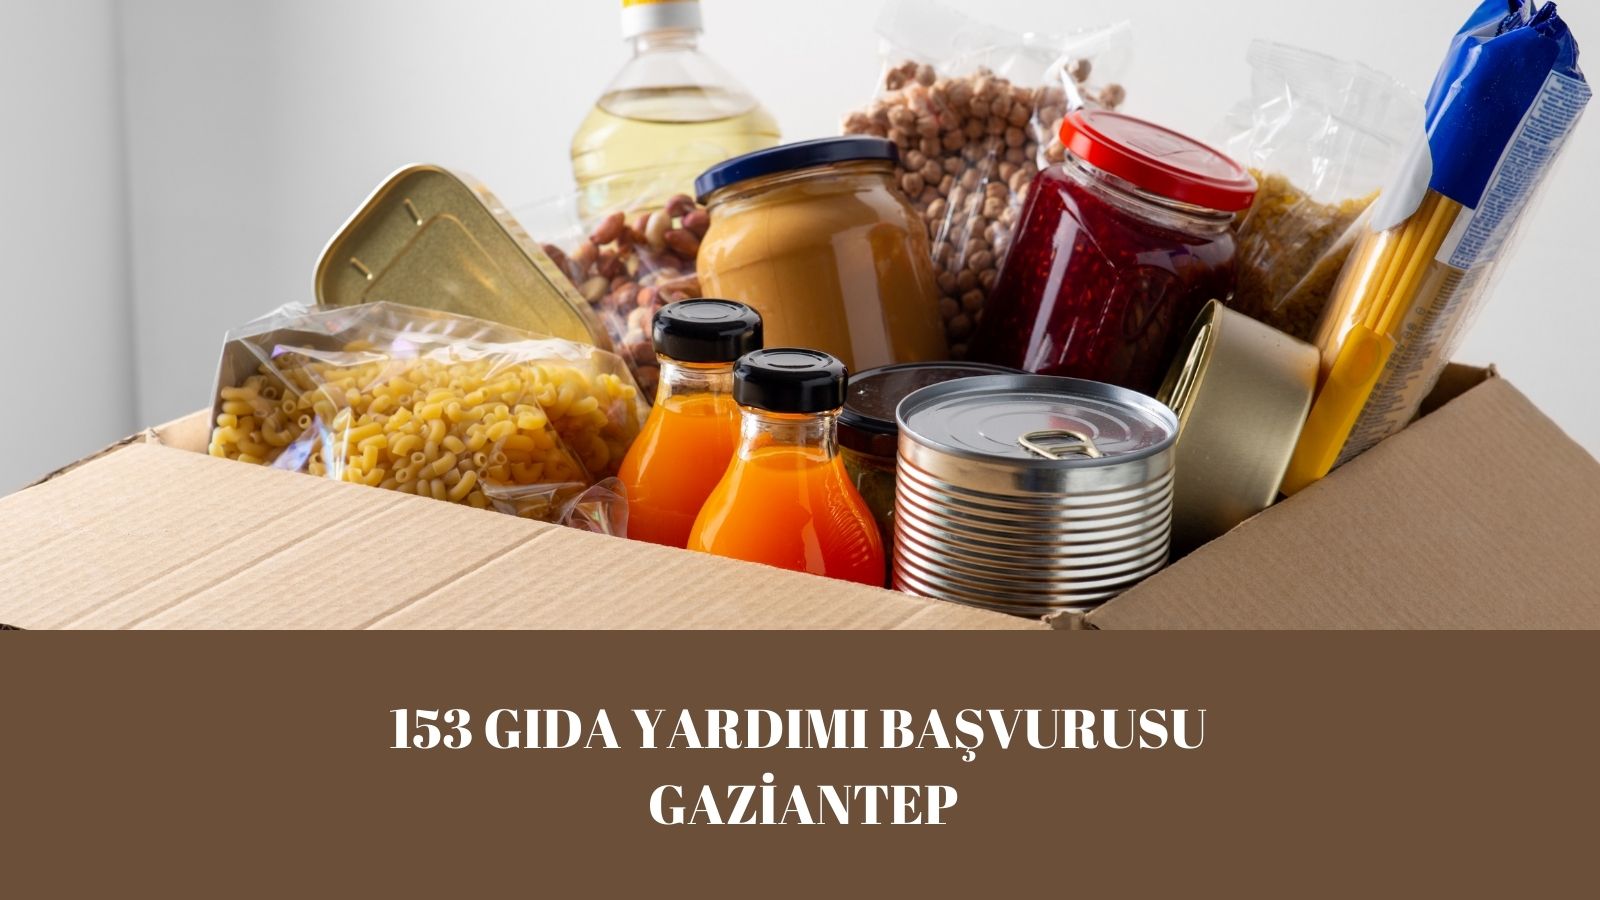 153 gıda yardımı başvurusu Gaziantep